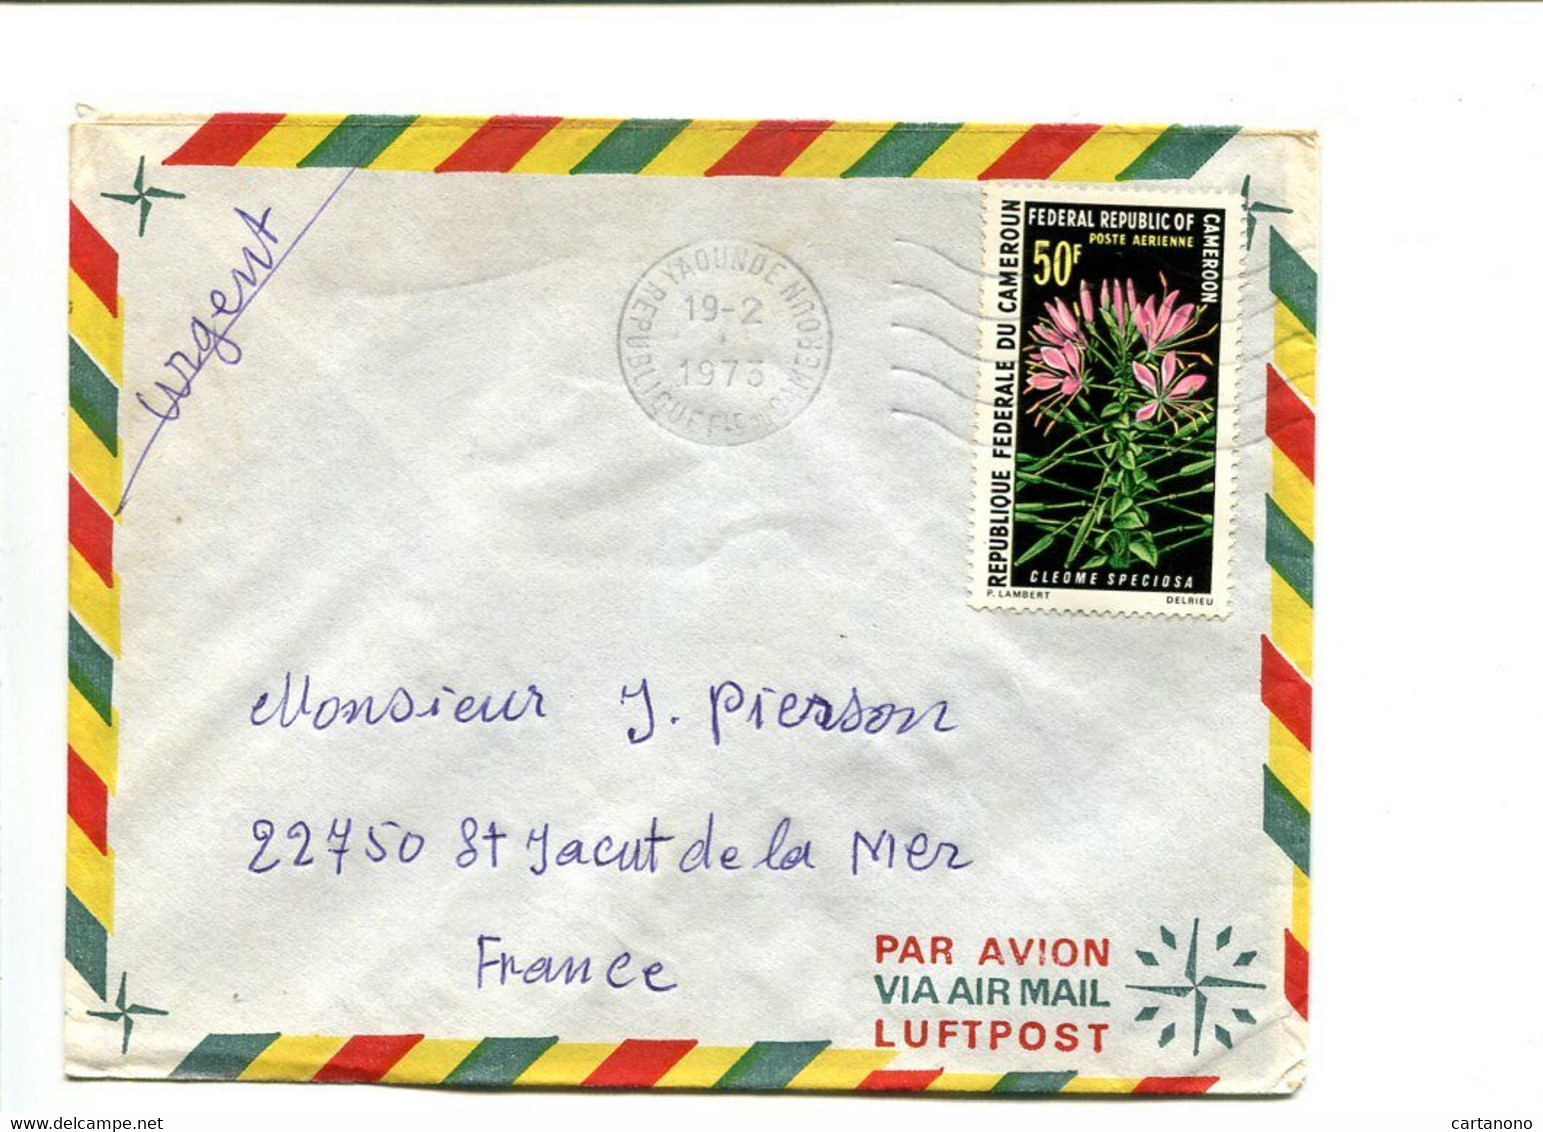 CAMEROUN Yaoude 1973 -  Affranchissement Seul Sur Lettre Par Avion - Fleurs - Cameroun (1960-...)